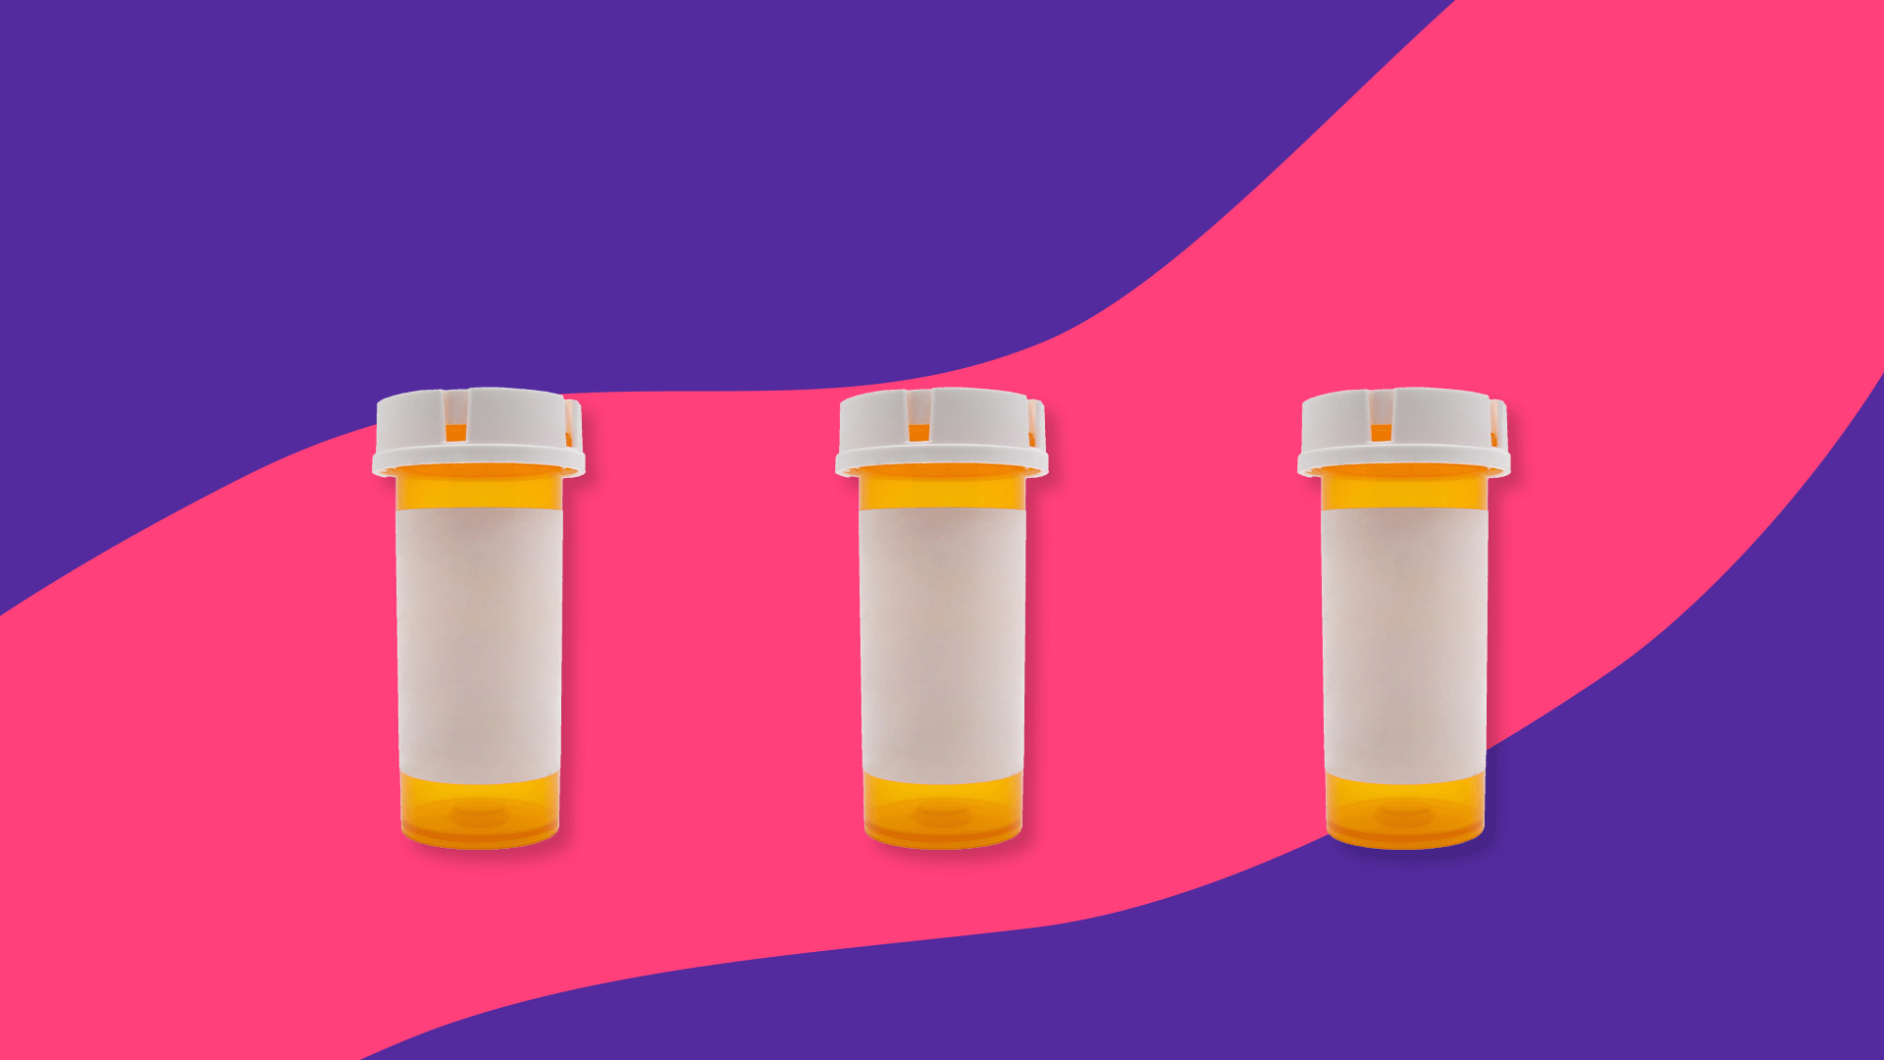 Three Rx pill bottles: Aspirin alternatives